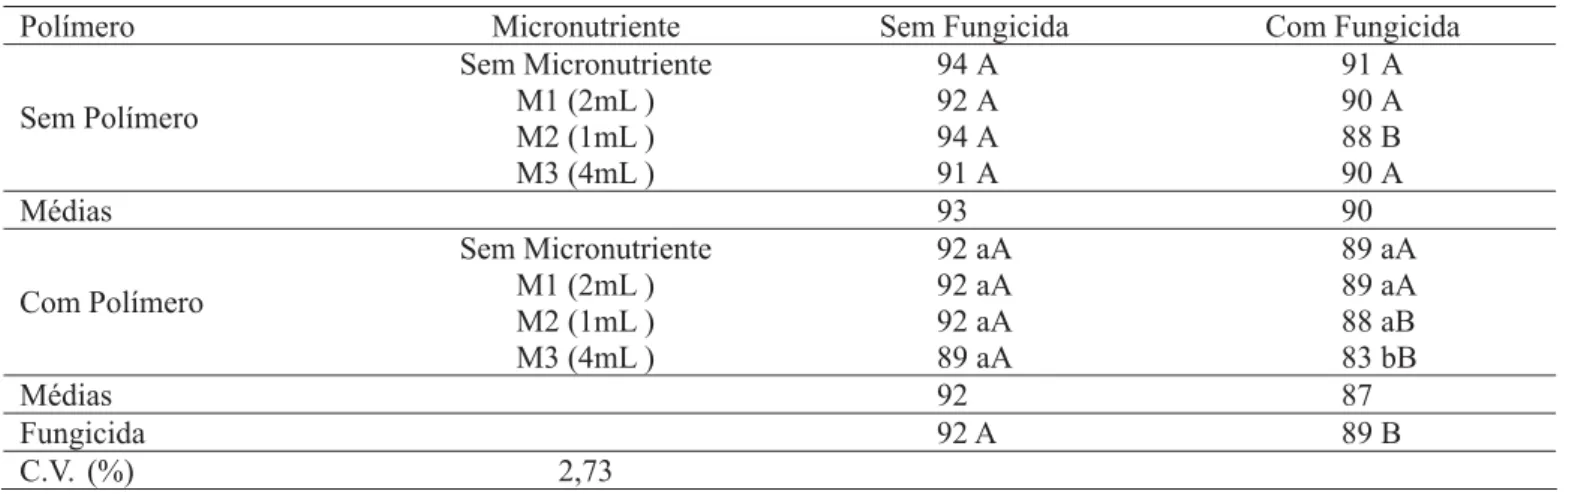 TABELA 1. Germinação (%) aos 5 dias de sementes de soja, submetidas ao recobrimento com fungicida, micronutriente e polímero, Pelotas, RS,  2003/04.